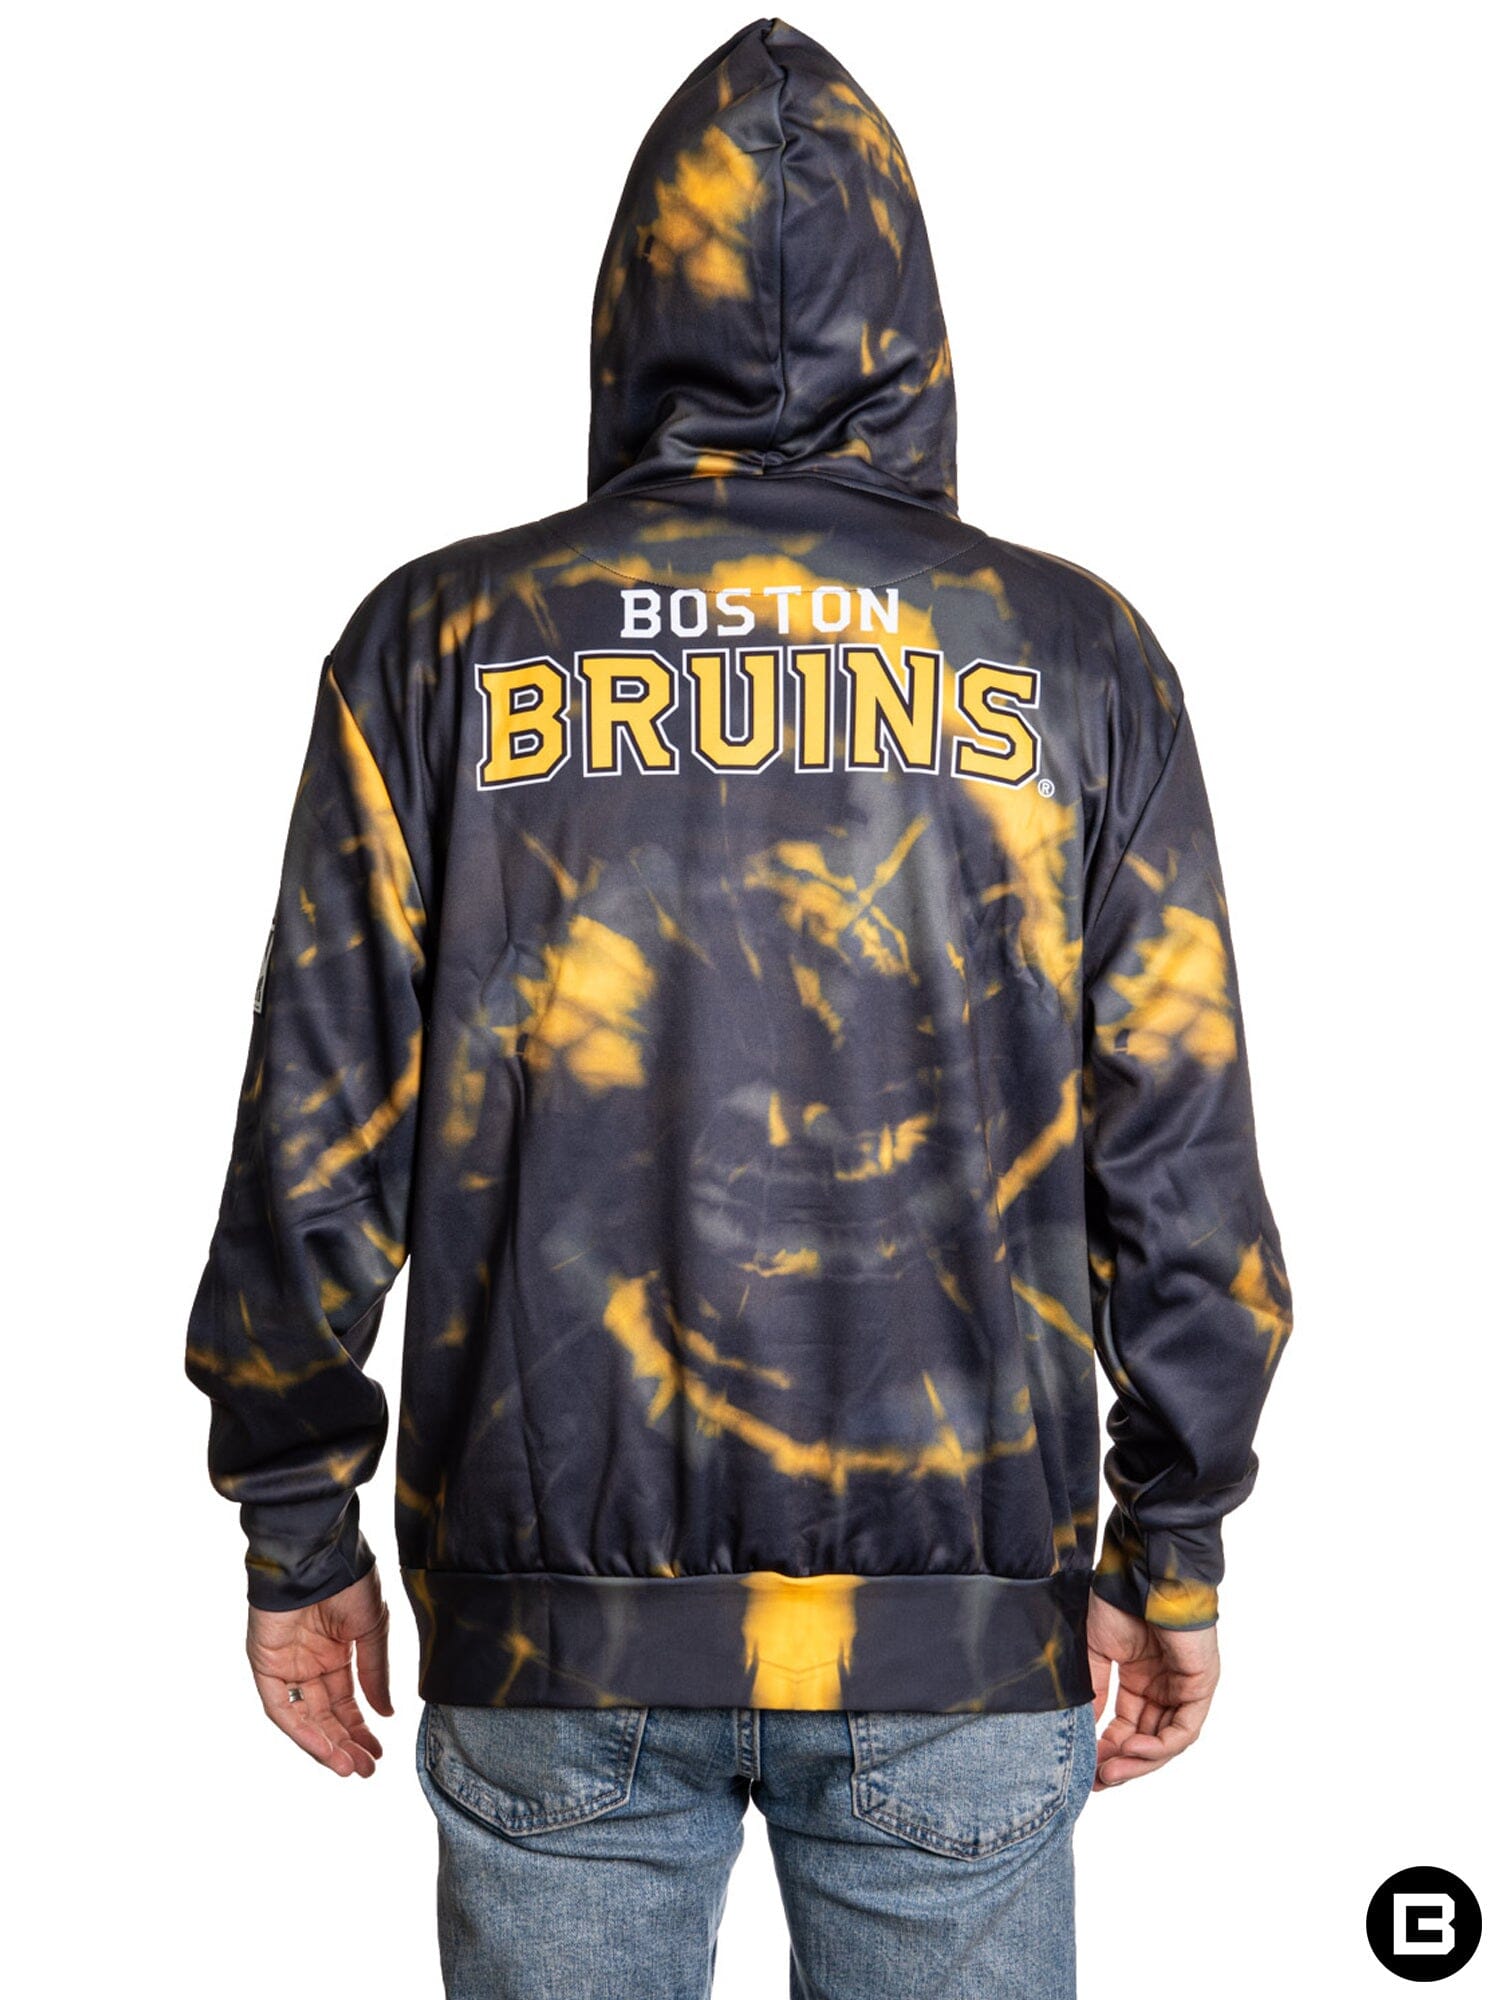 NHL Big & Tall Boston Bruins Wordmark Frame Grey Pullover Hoodie